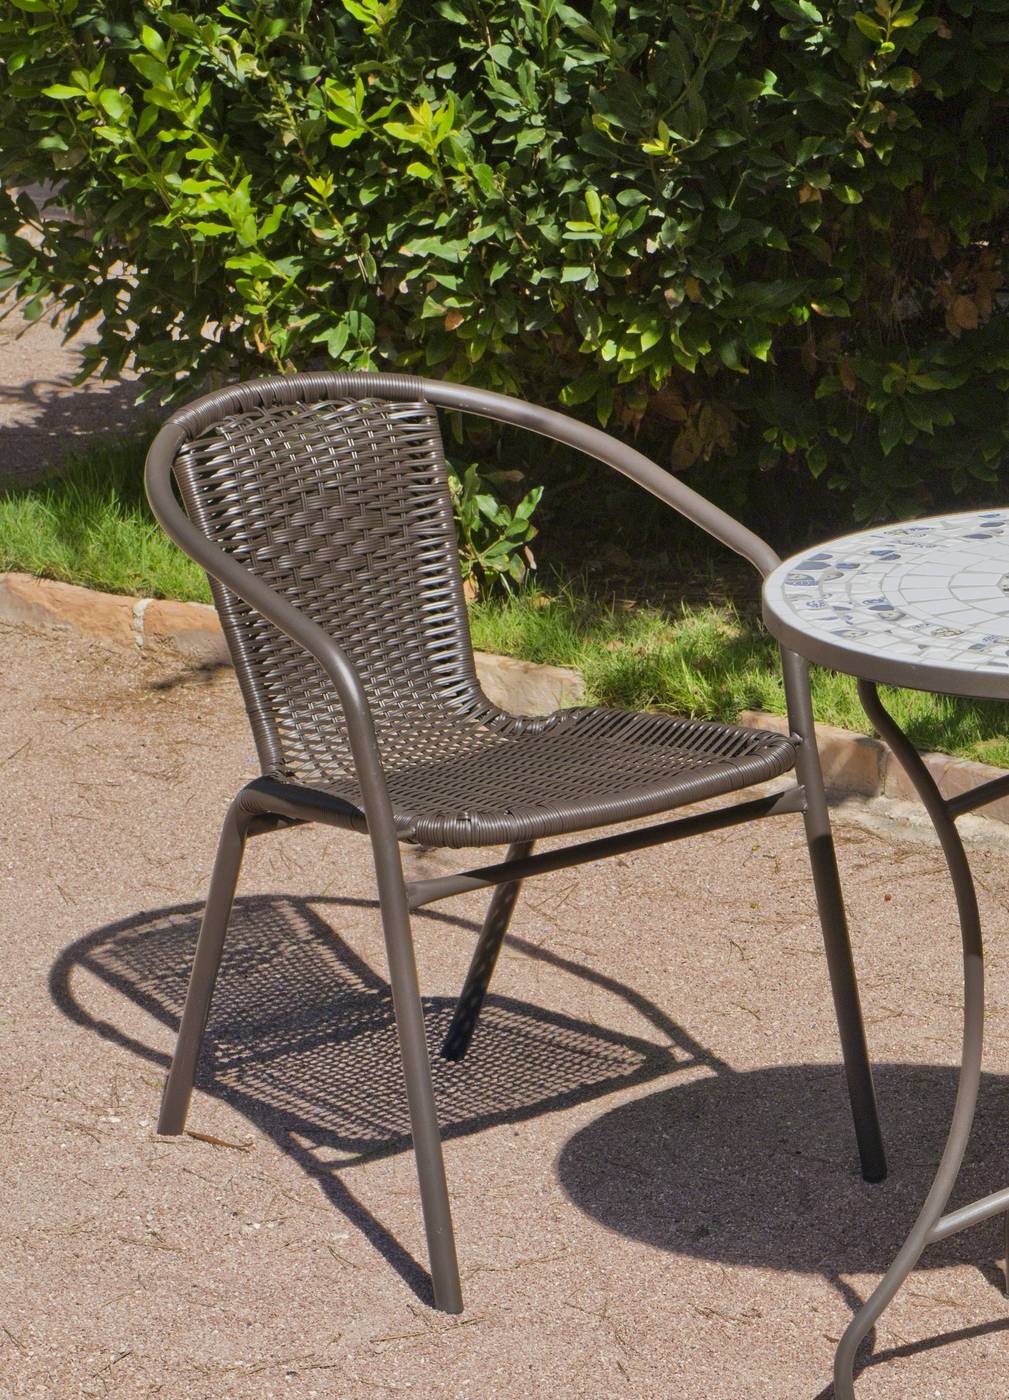 Set Acero Brasil-60 - Conjunto de acero color bronce: mesa redonda de 60 cm. Con tapa de cristal templado + 2 sillones apilables de acero y ratán sintético